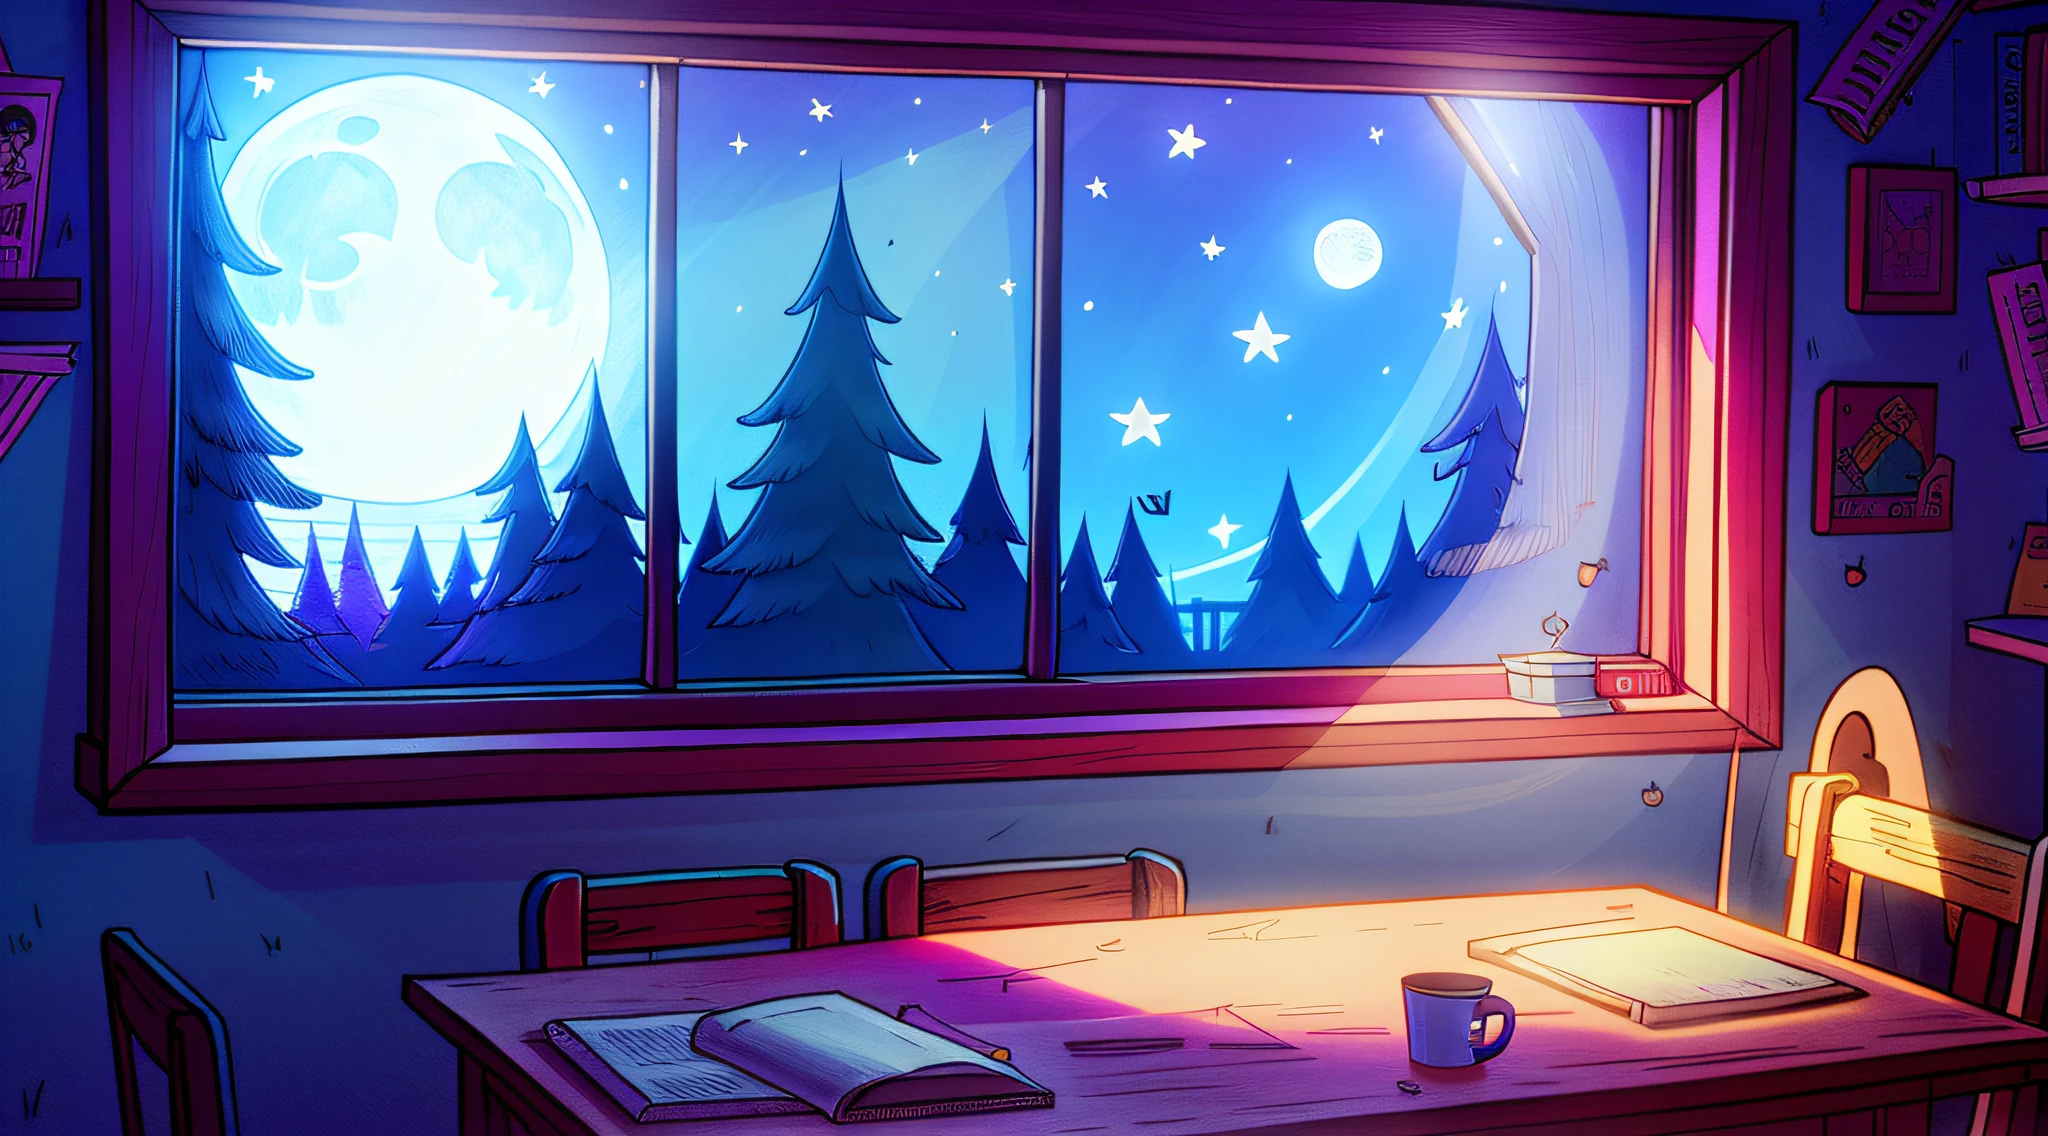 晚上舒适的房间, 月光透过窗户照进来, 详细说明, 在桌边学习的女孩, 卡通, 类似重力瀑布的风格,